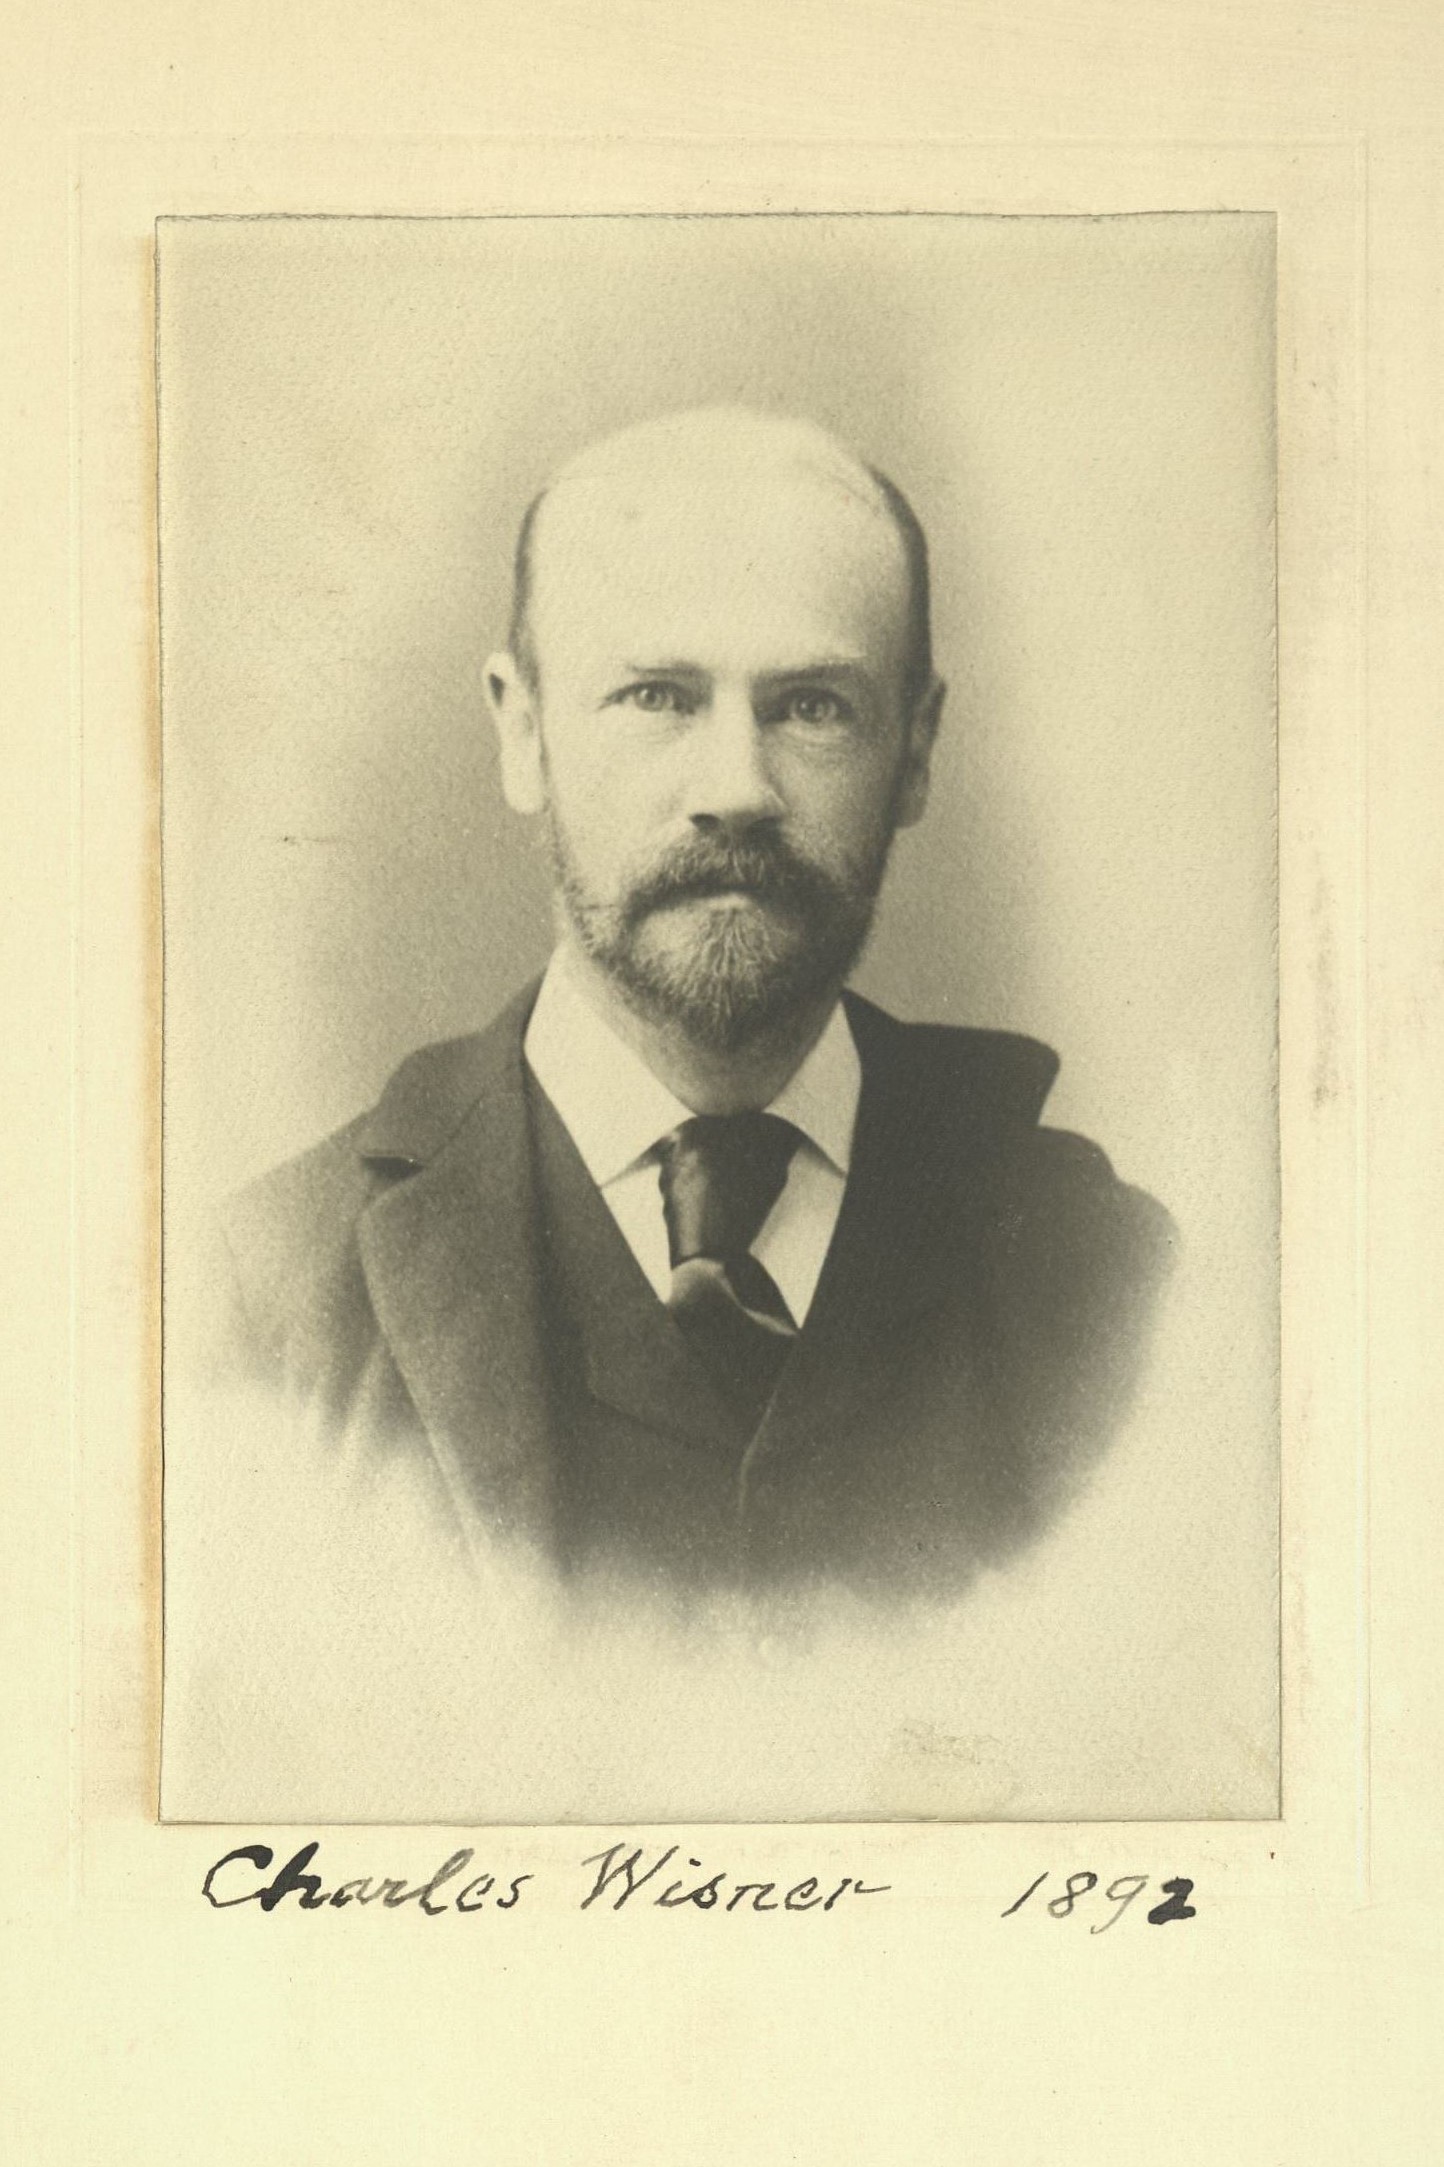 Member portrait of Charles Wisner